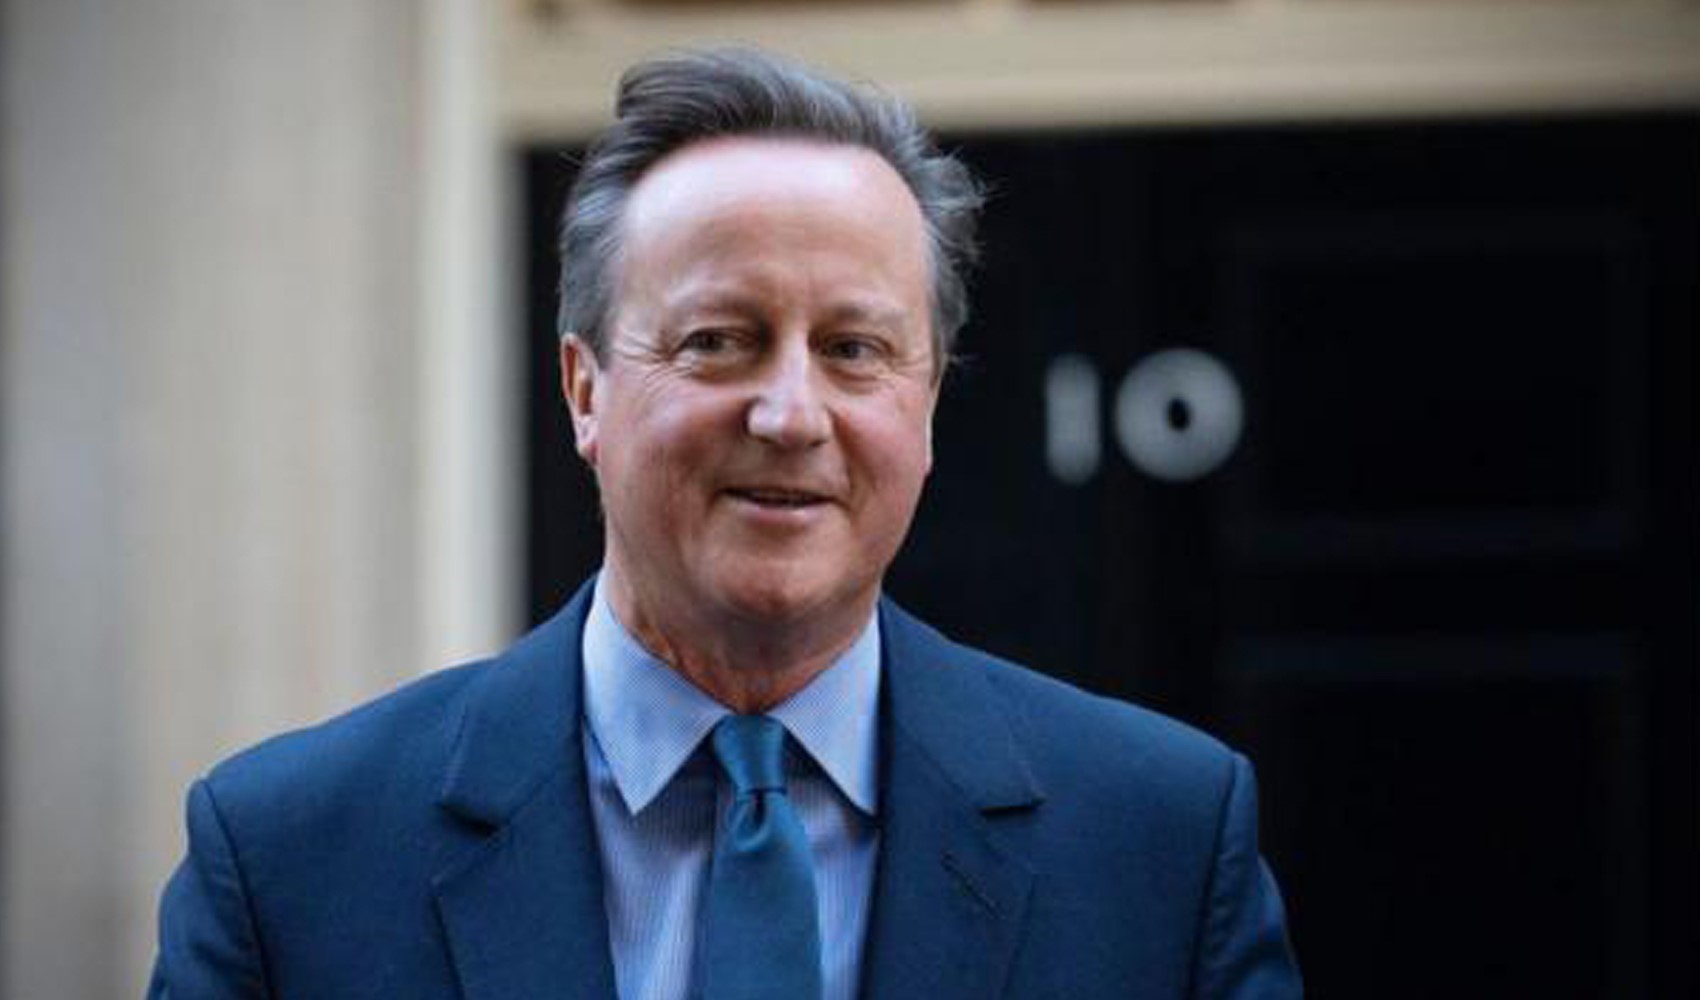 İngiltere Dışişleri Bakanı Cameron'dan İsrail'e 'misilleme' uyarısı: 'Akıllı olmaya çağırıyoruz'